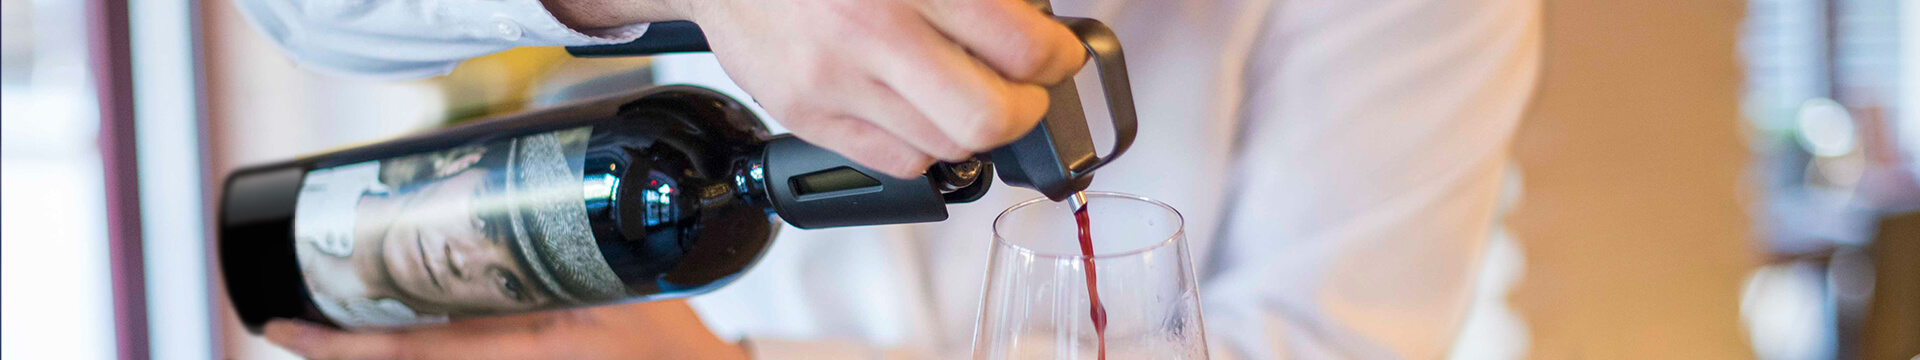 Coravin, el gadget perfecto para winelovers